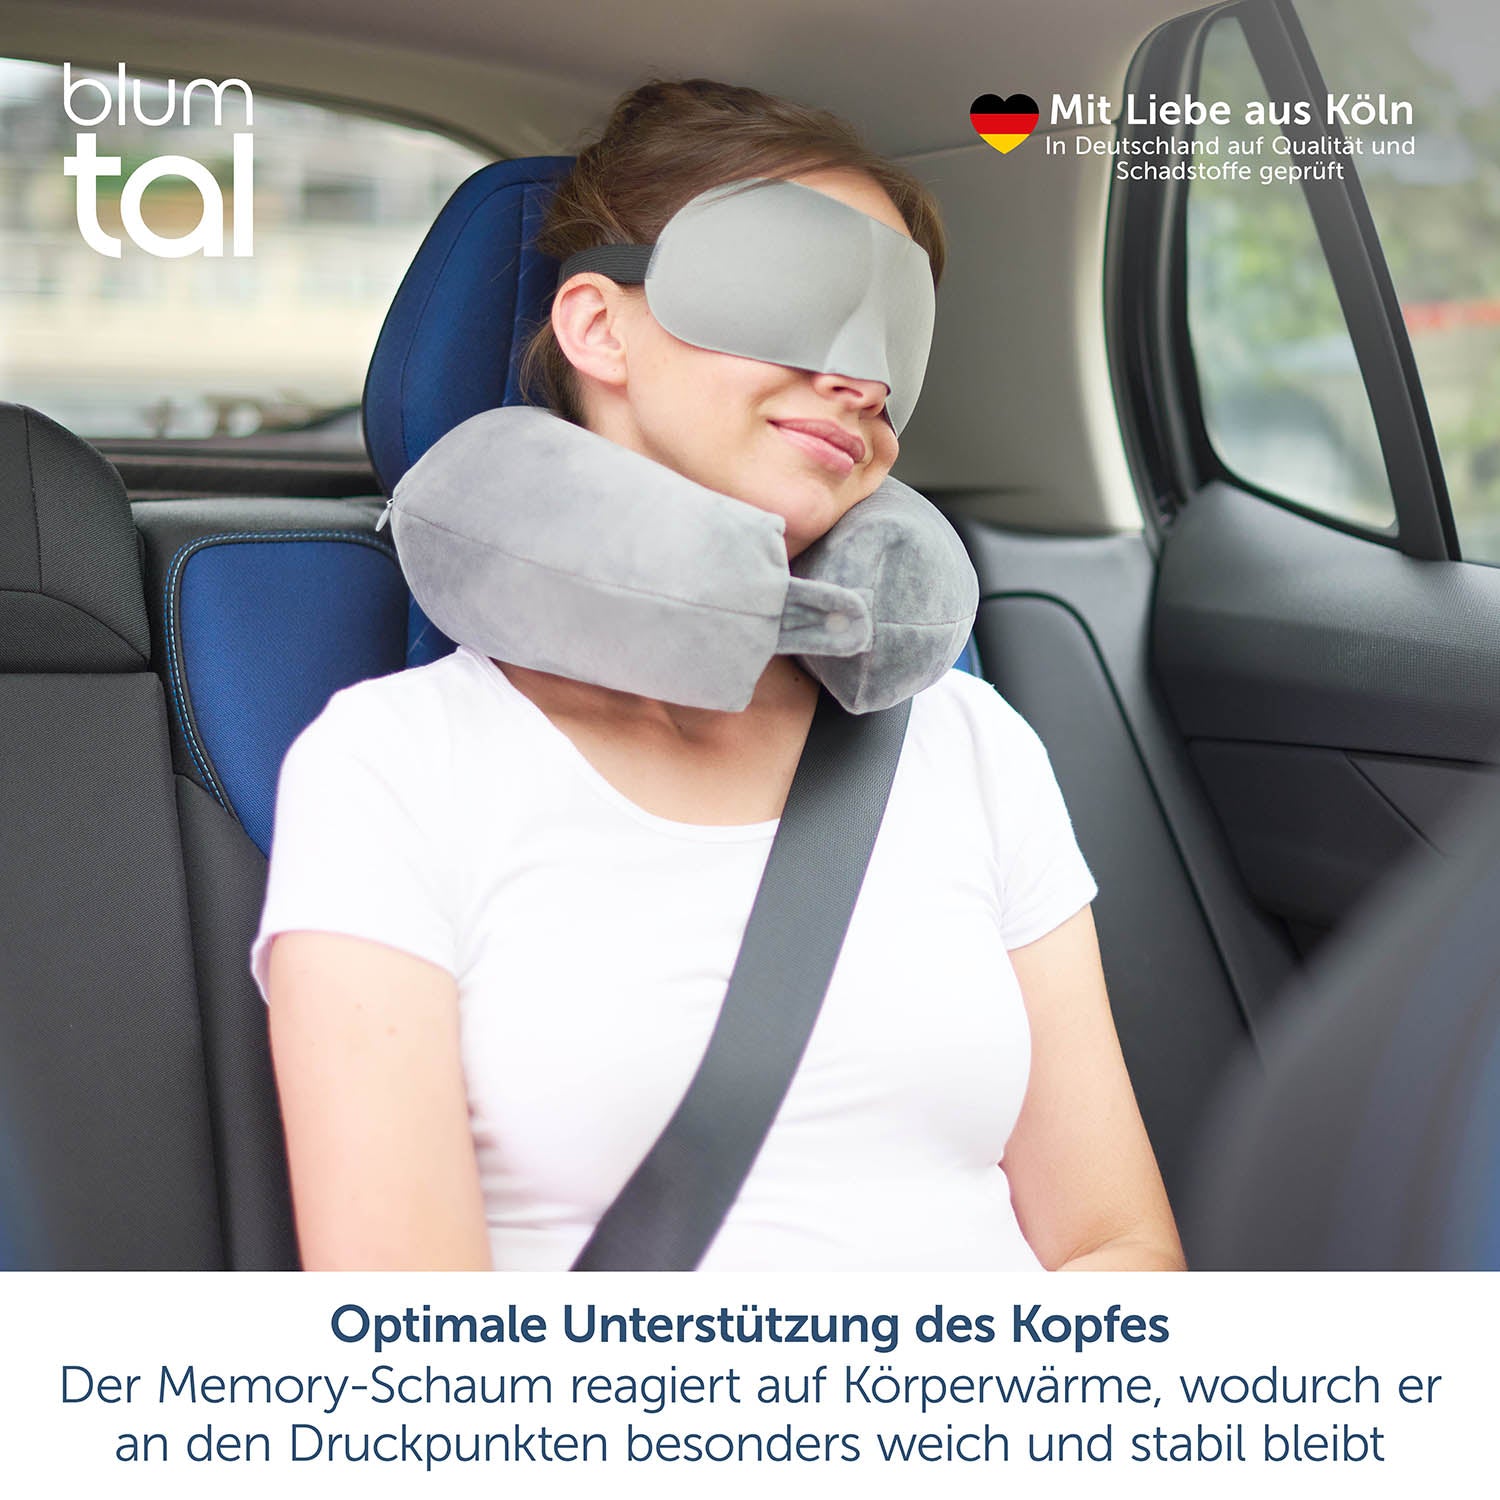 Frau mit grauem Nackenkissen und Schlafmaske entspannt im Autositz, mit Text über Qualitätsprüfung und Memory-Schaum Vorteilen.